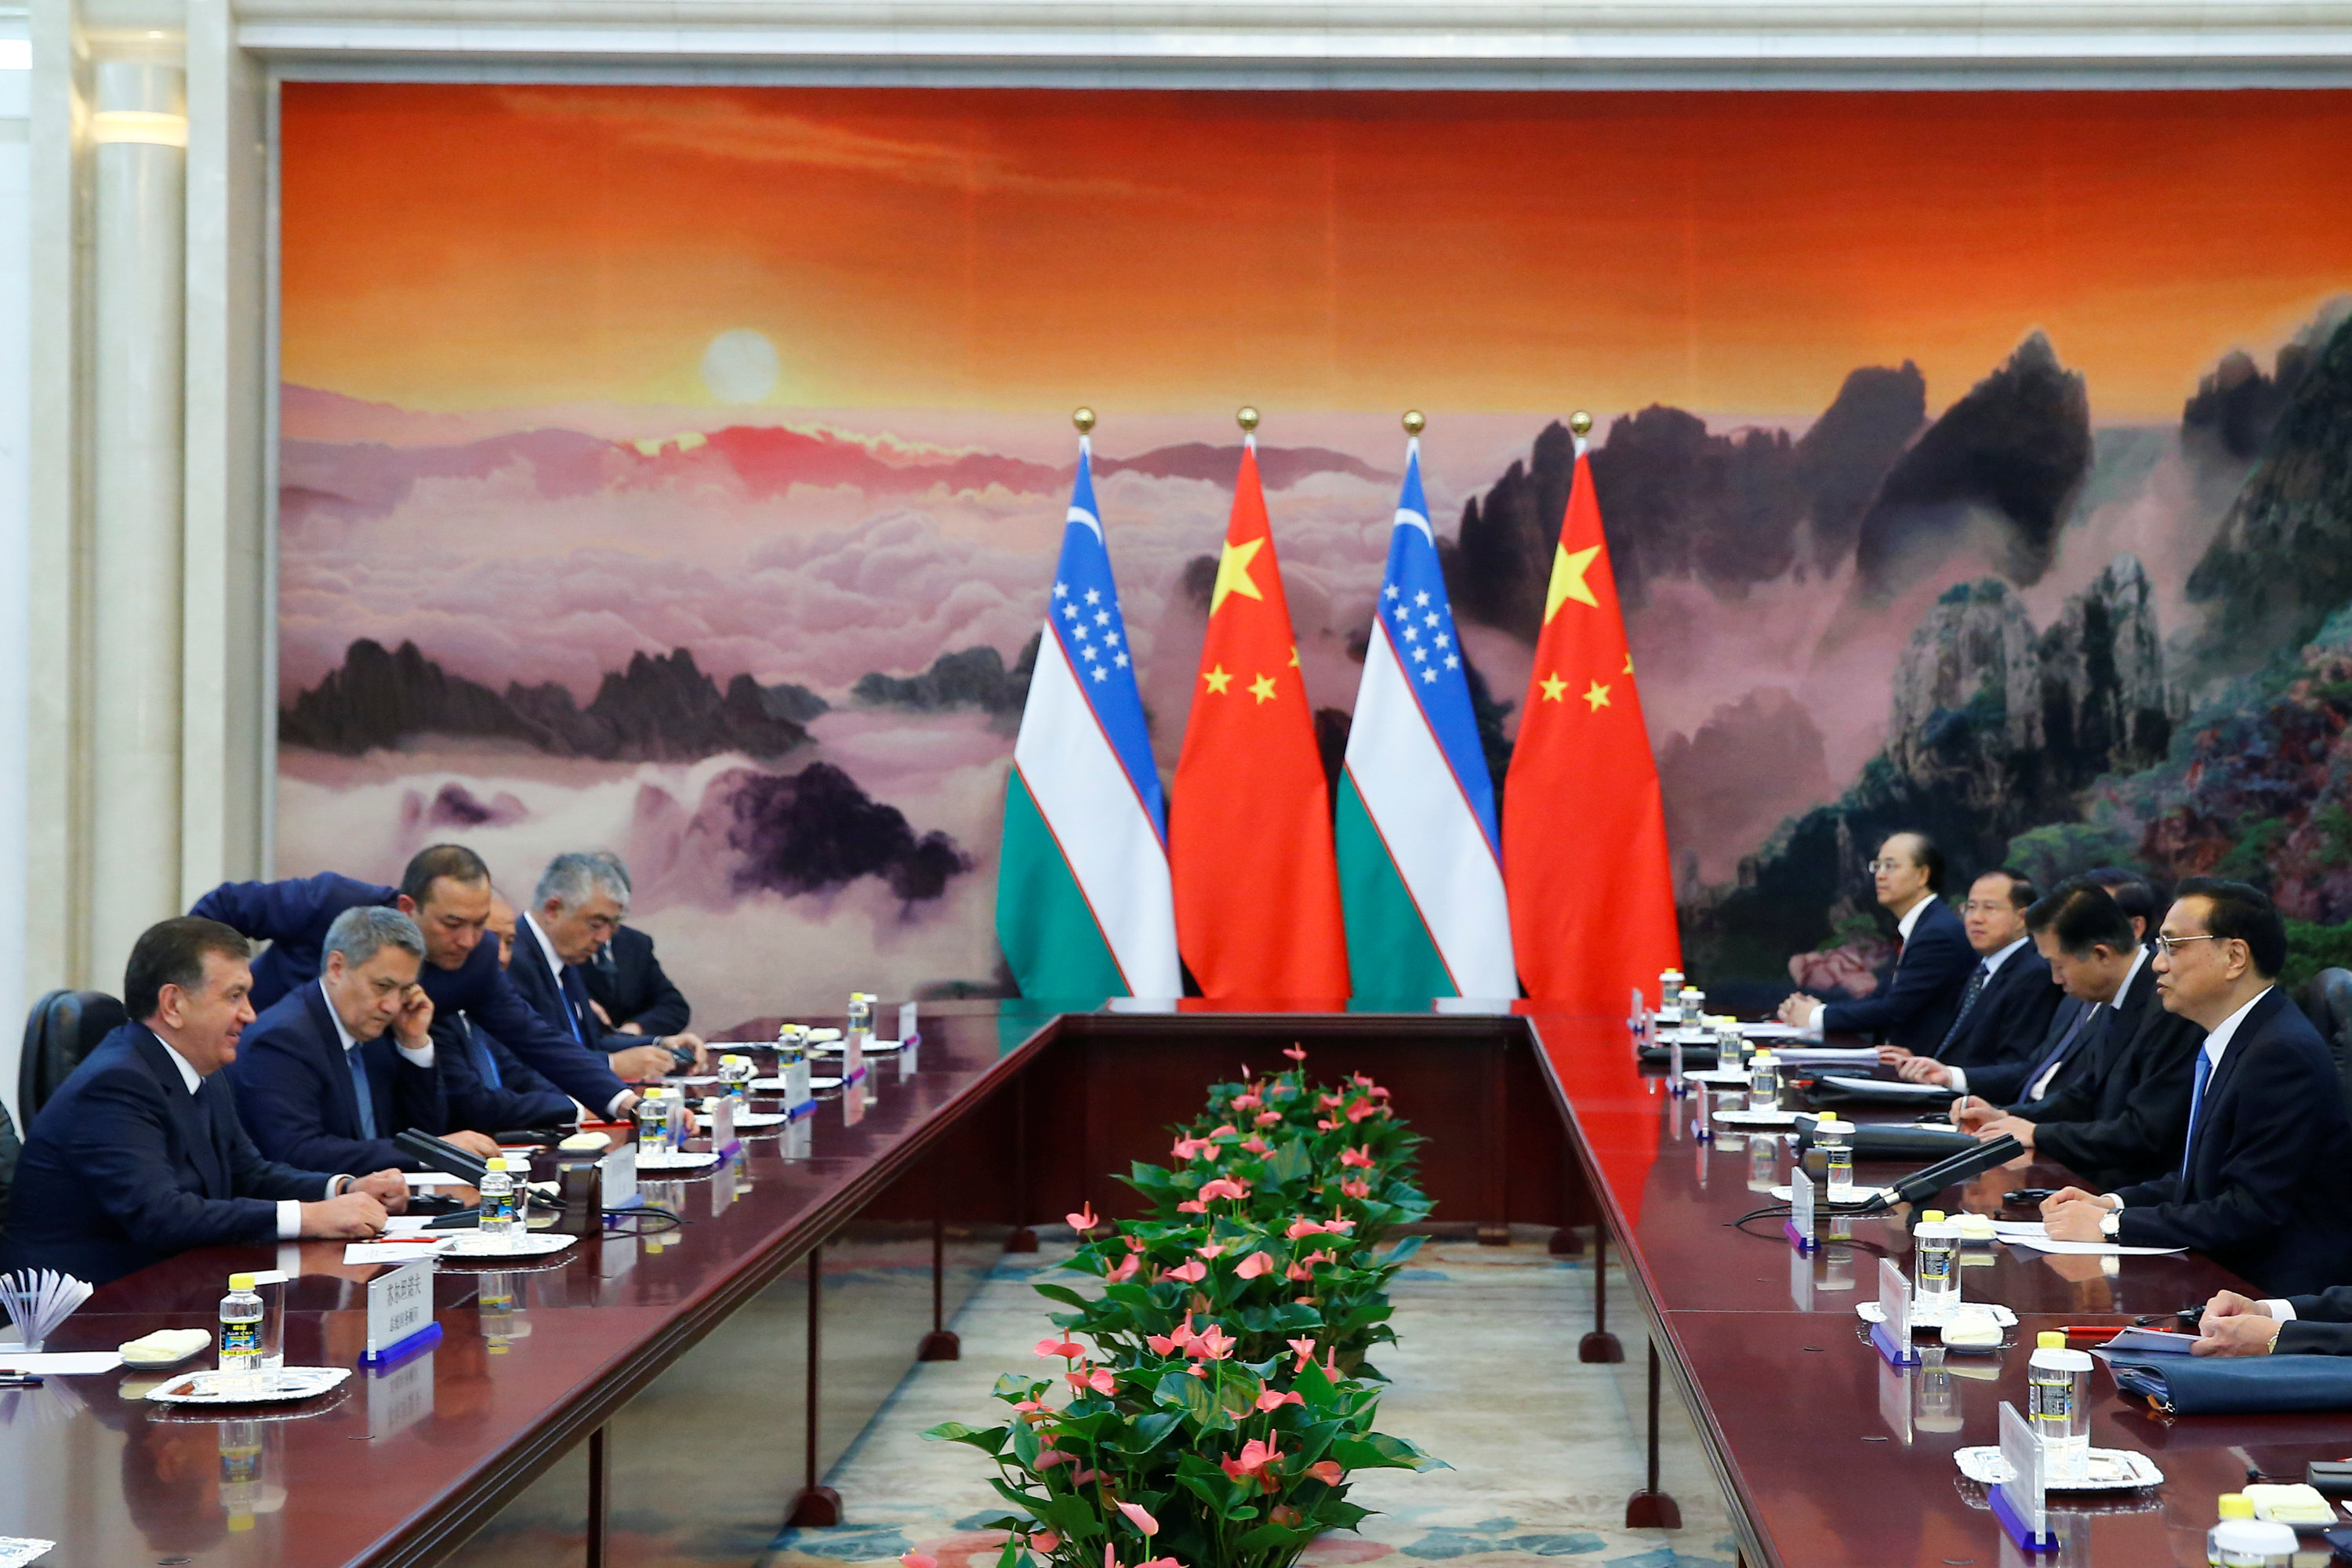 رئيس مجلس الدولة الصينى والرئيس الأوزبكى يحضران اجتماعا مشتركا